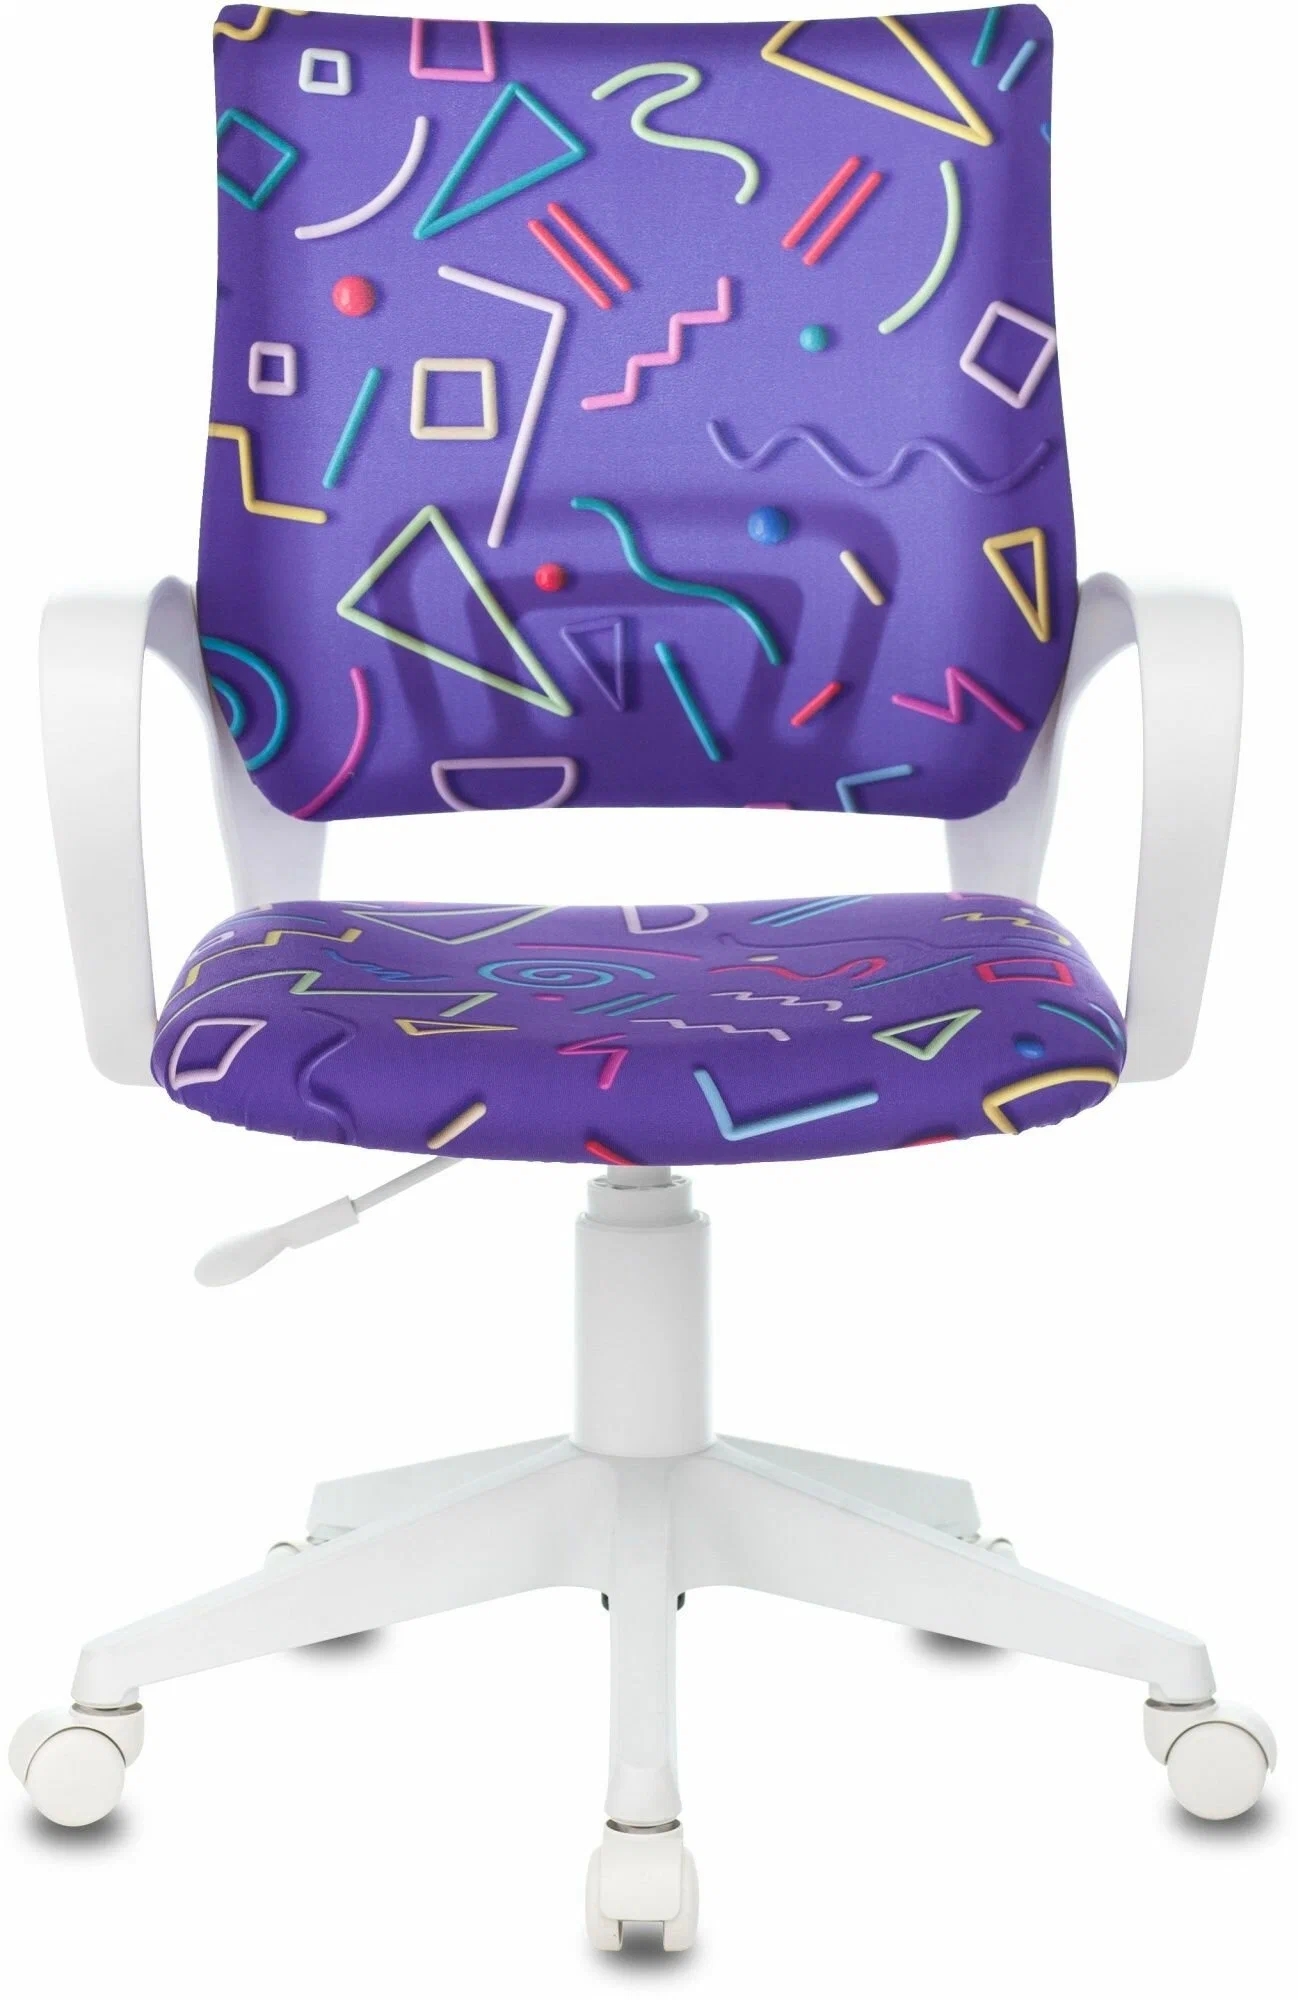 Кресло детское BURO BUROKIDS 1 W-STICKVI фиолетовый  